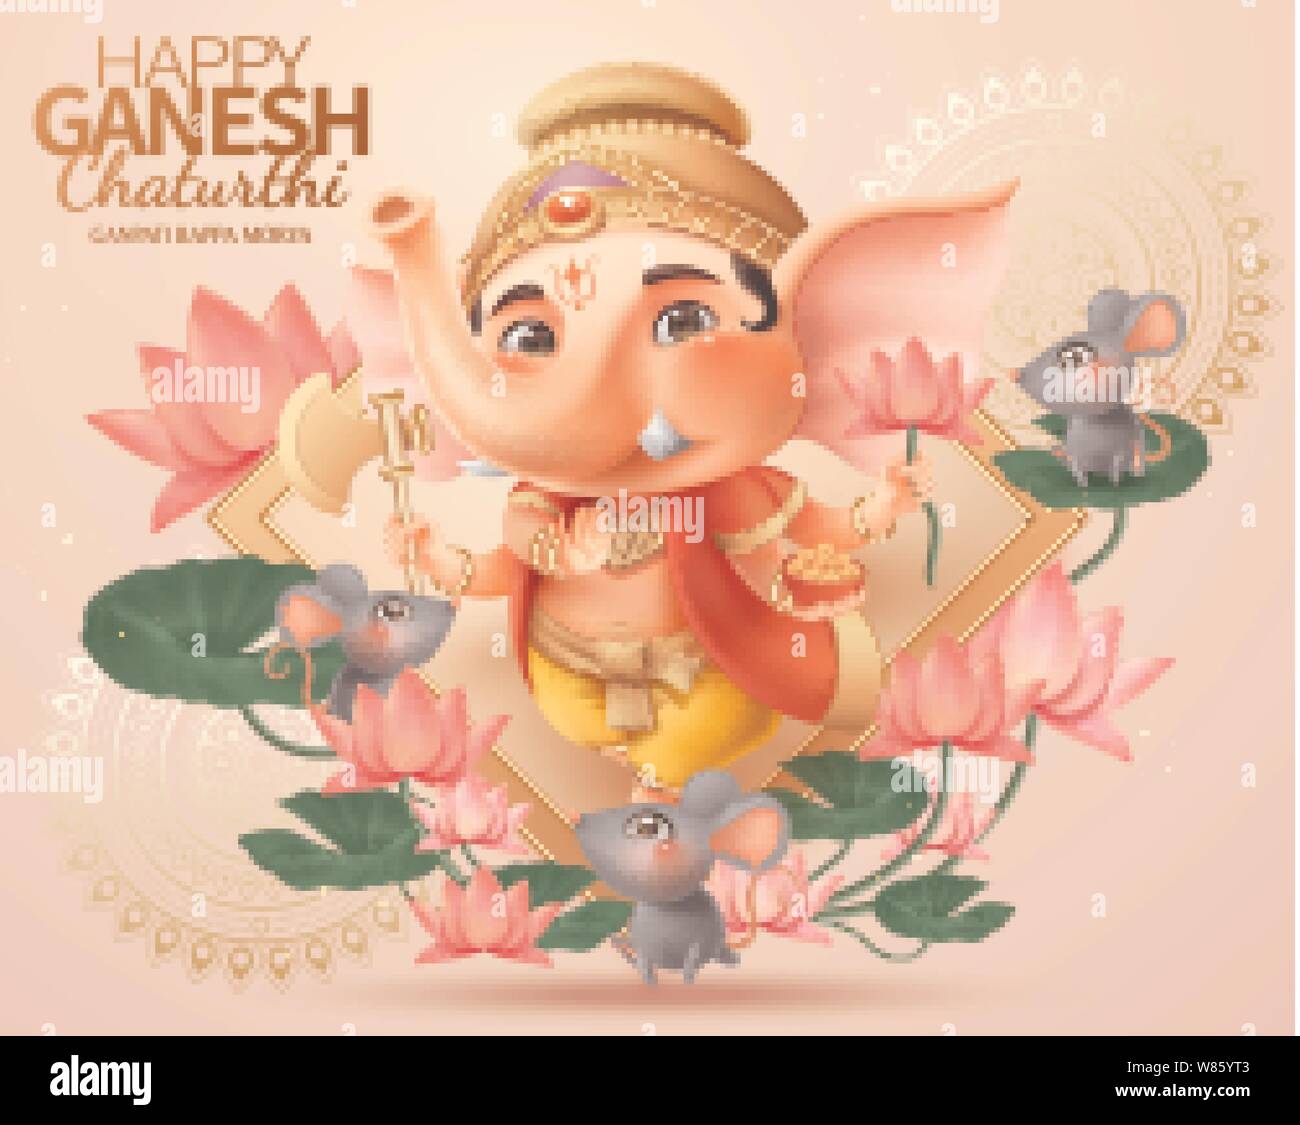 Happy Ganesh chaturthi design with lovely chubby Ganesha holding ...